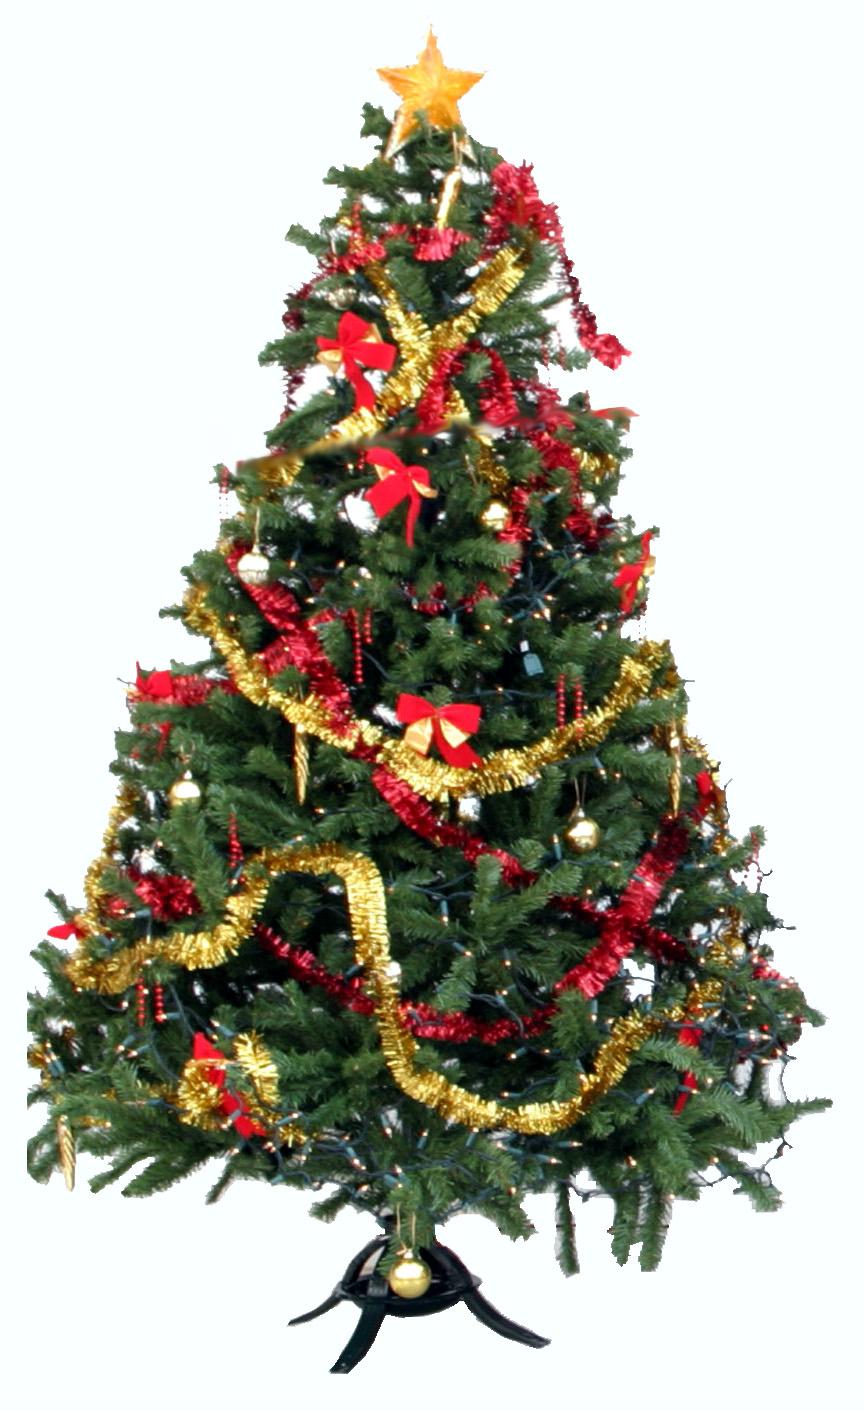 Humble Christmas Tree